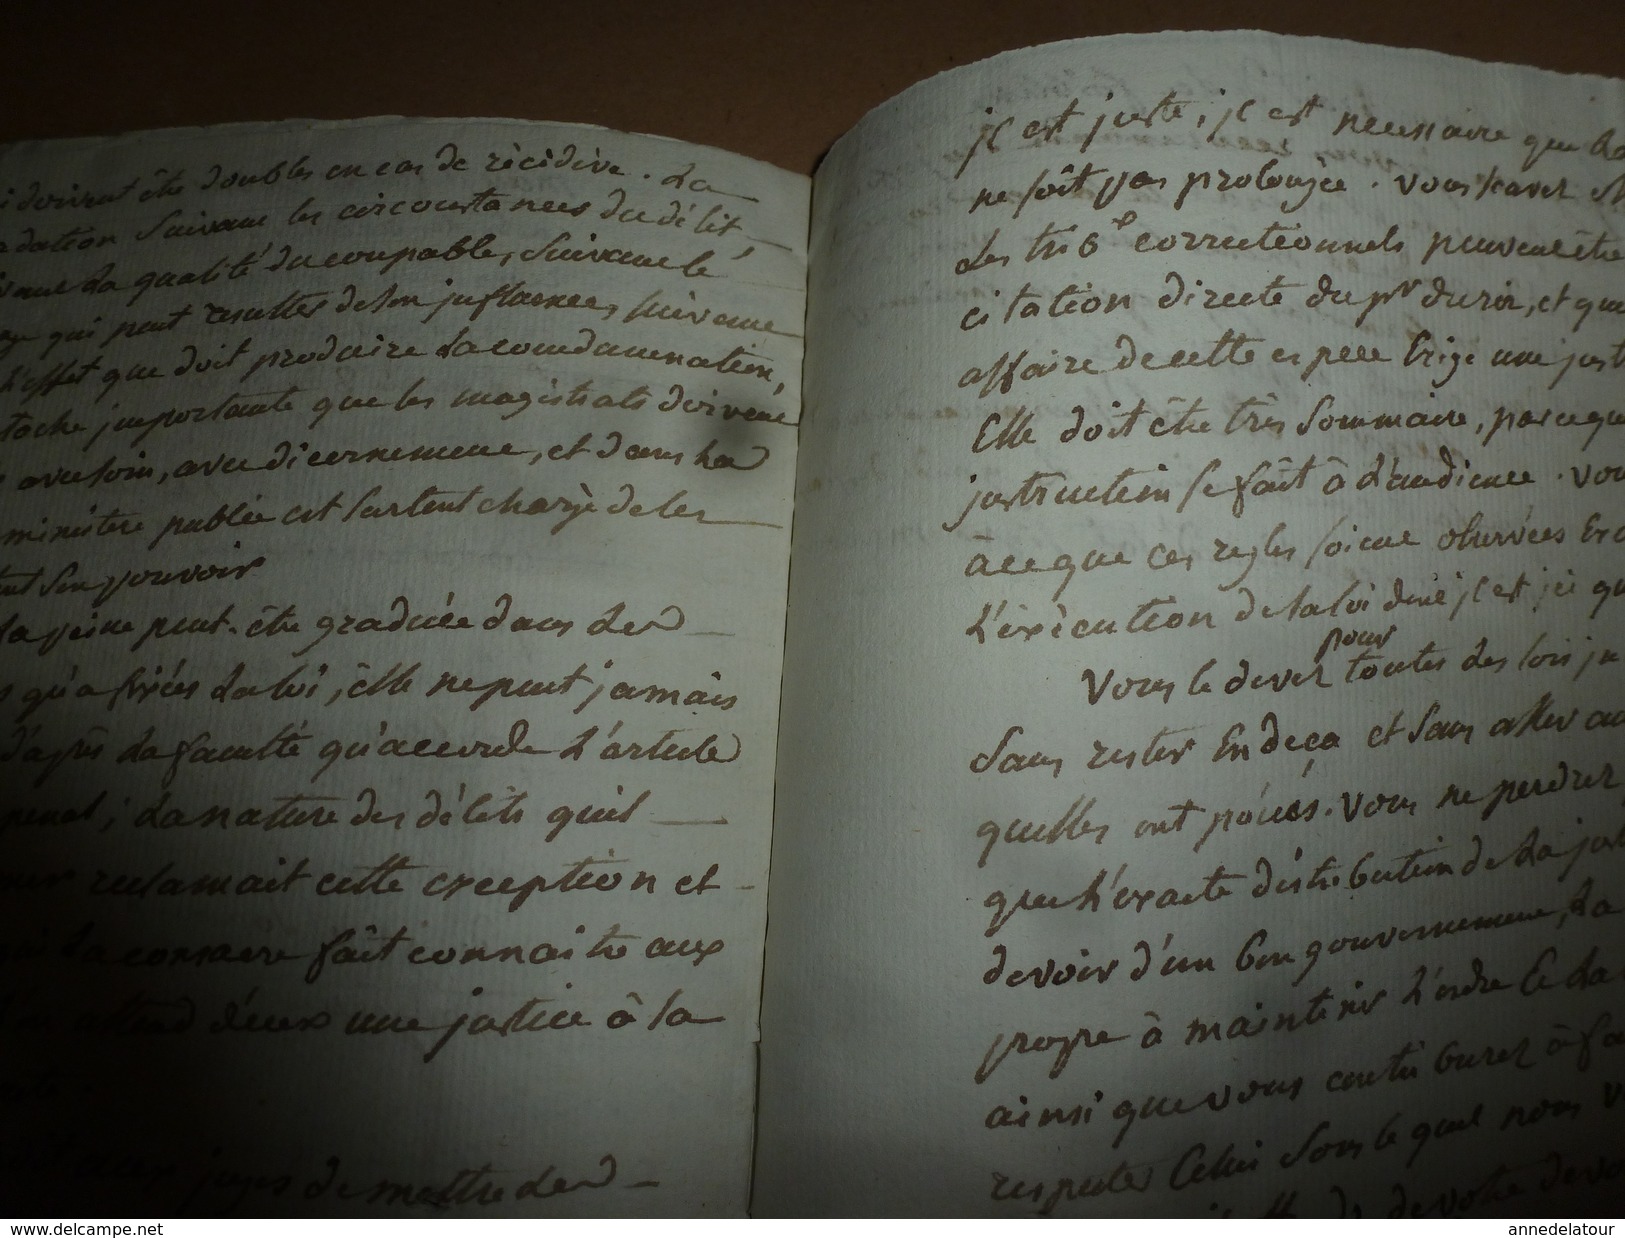 1815 Sur la Répression des cris séditieux et provocation à la Révolte : rapport manuscrit du ministre MARBOIS